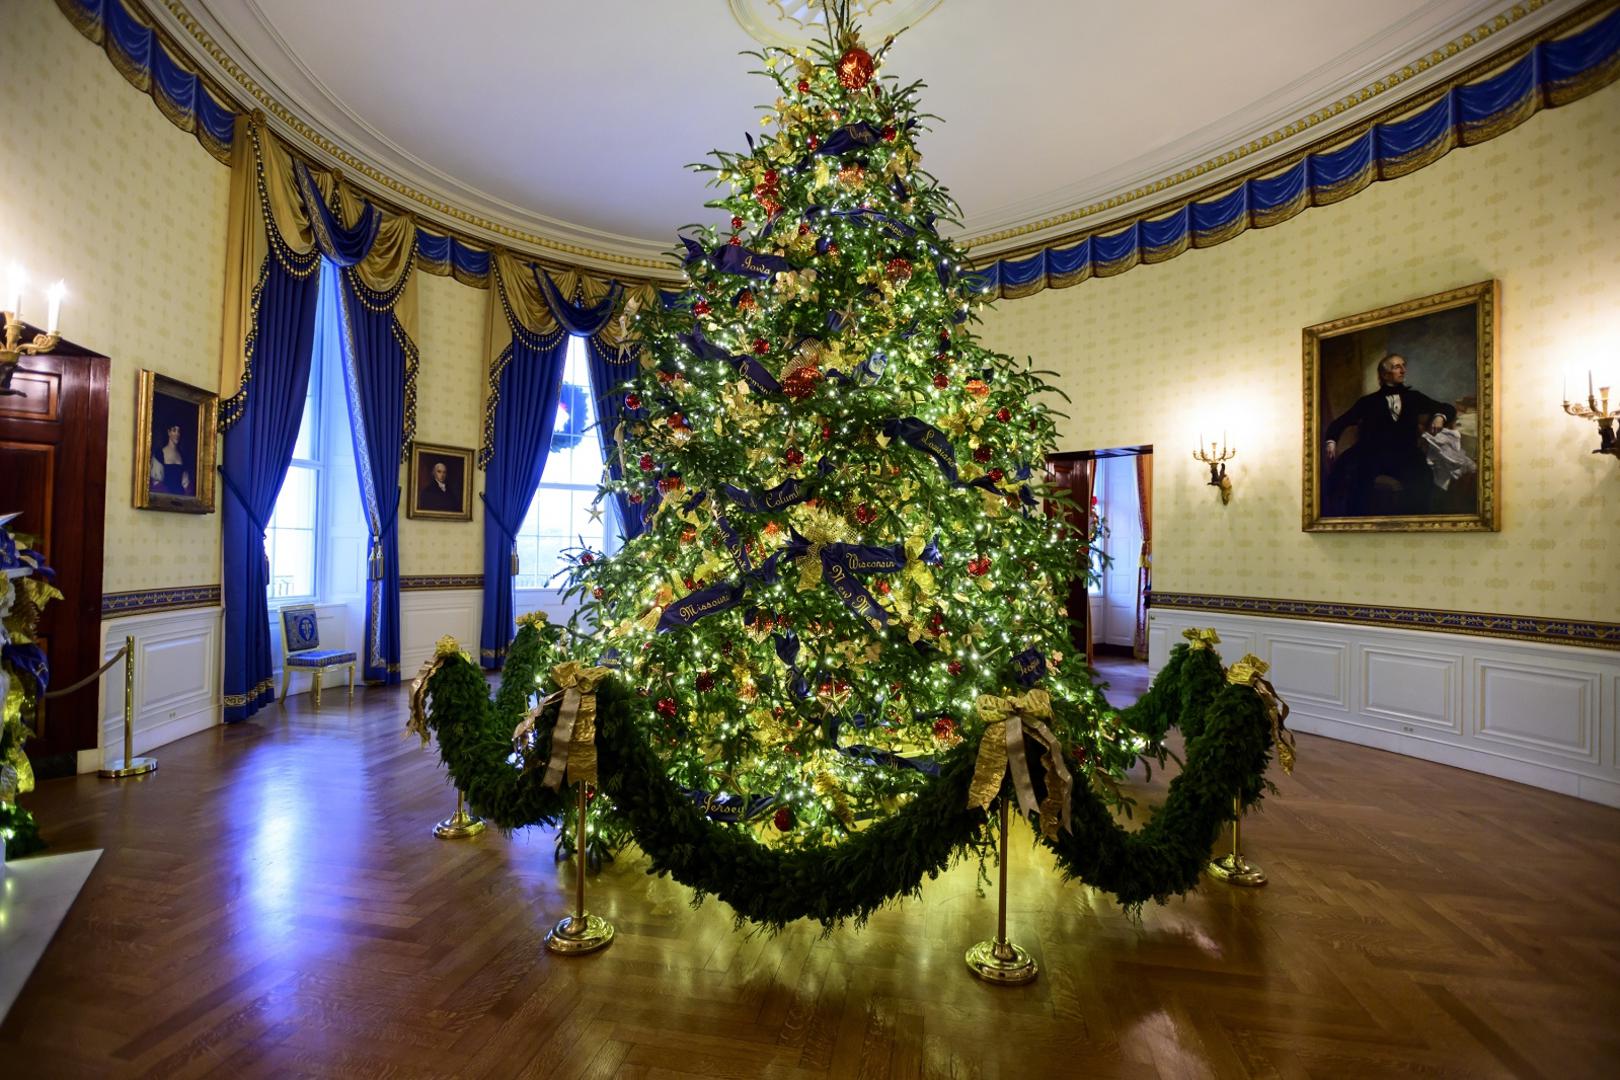 Središnje mjesto zauzima božićno drvo visoko 5,5 metara.